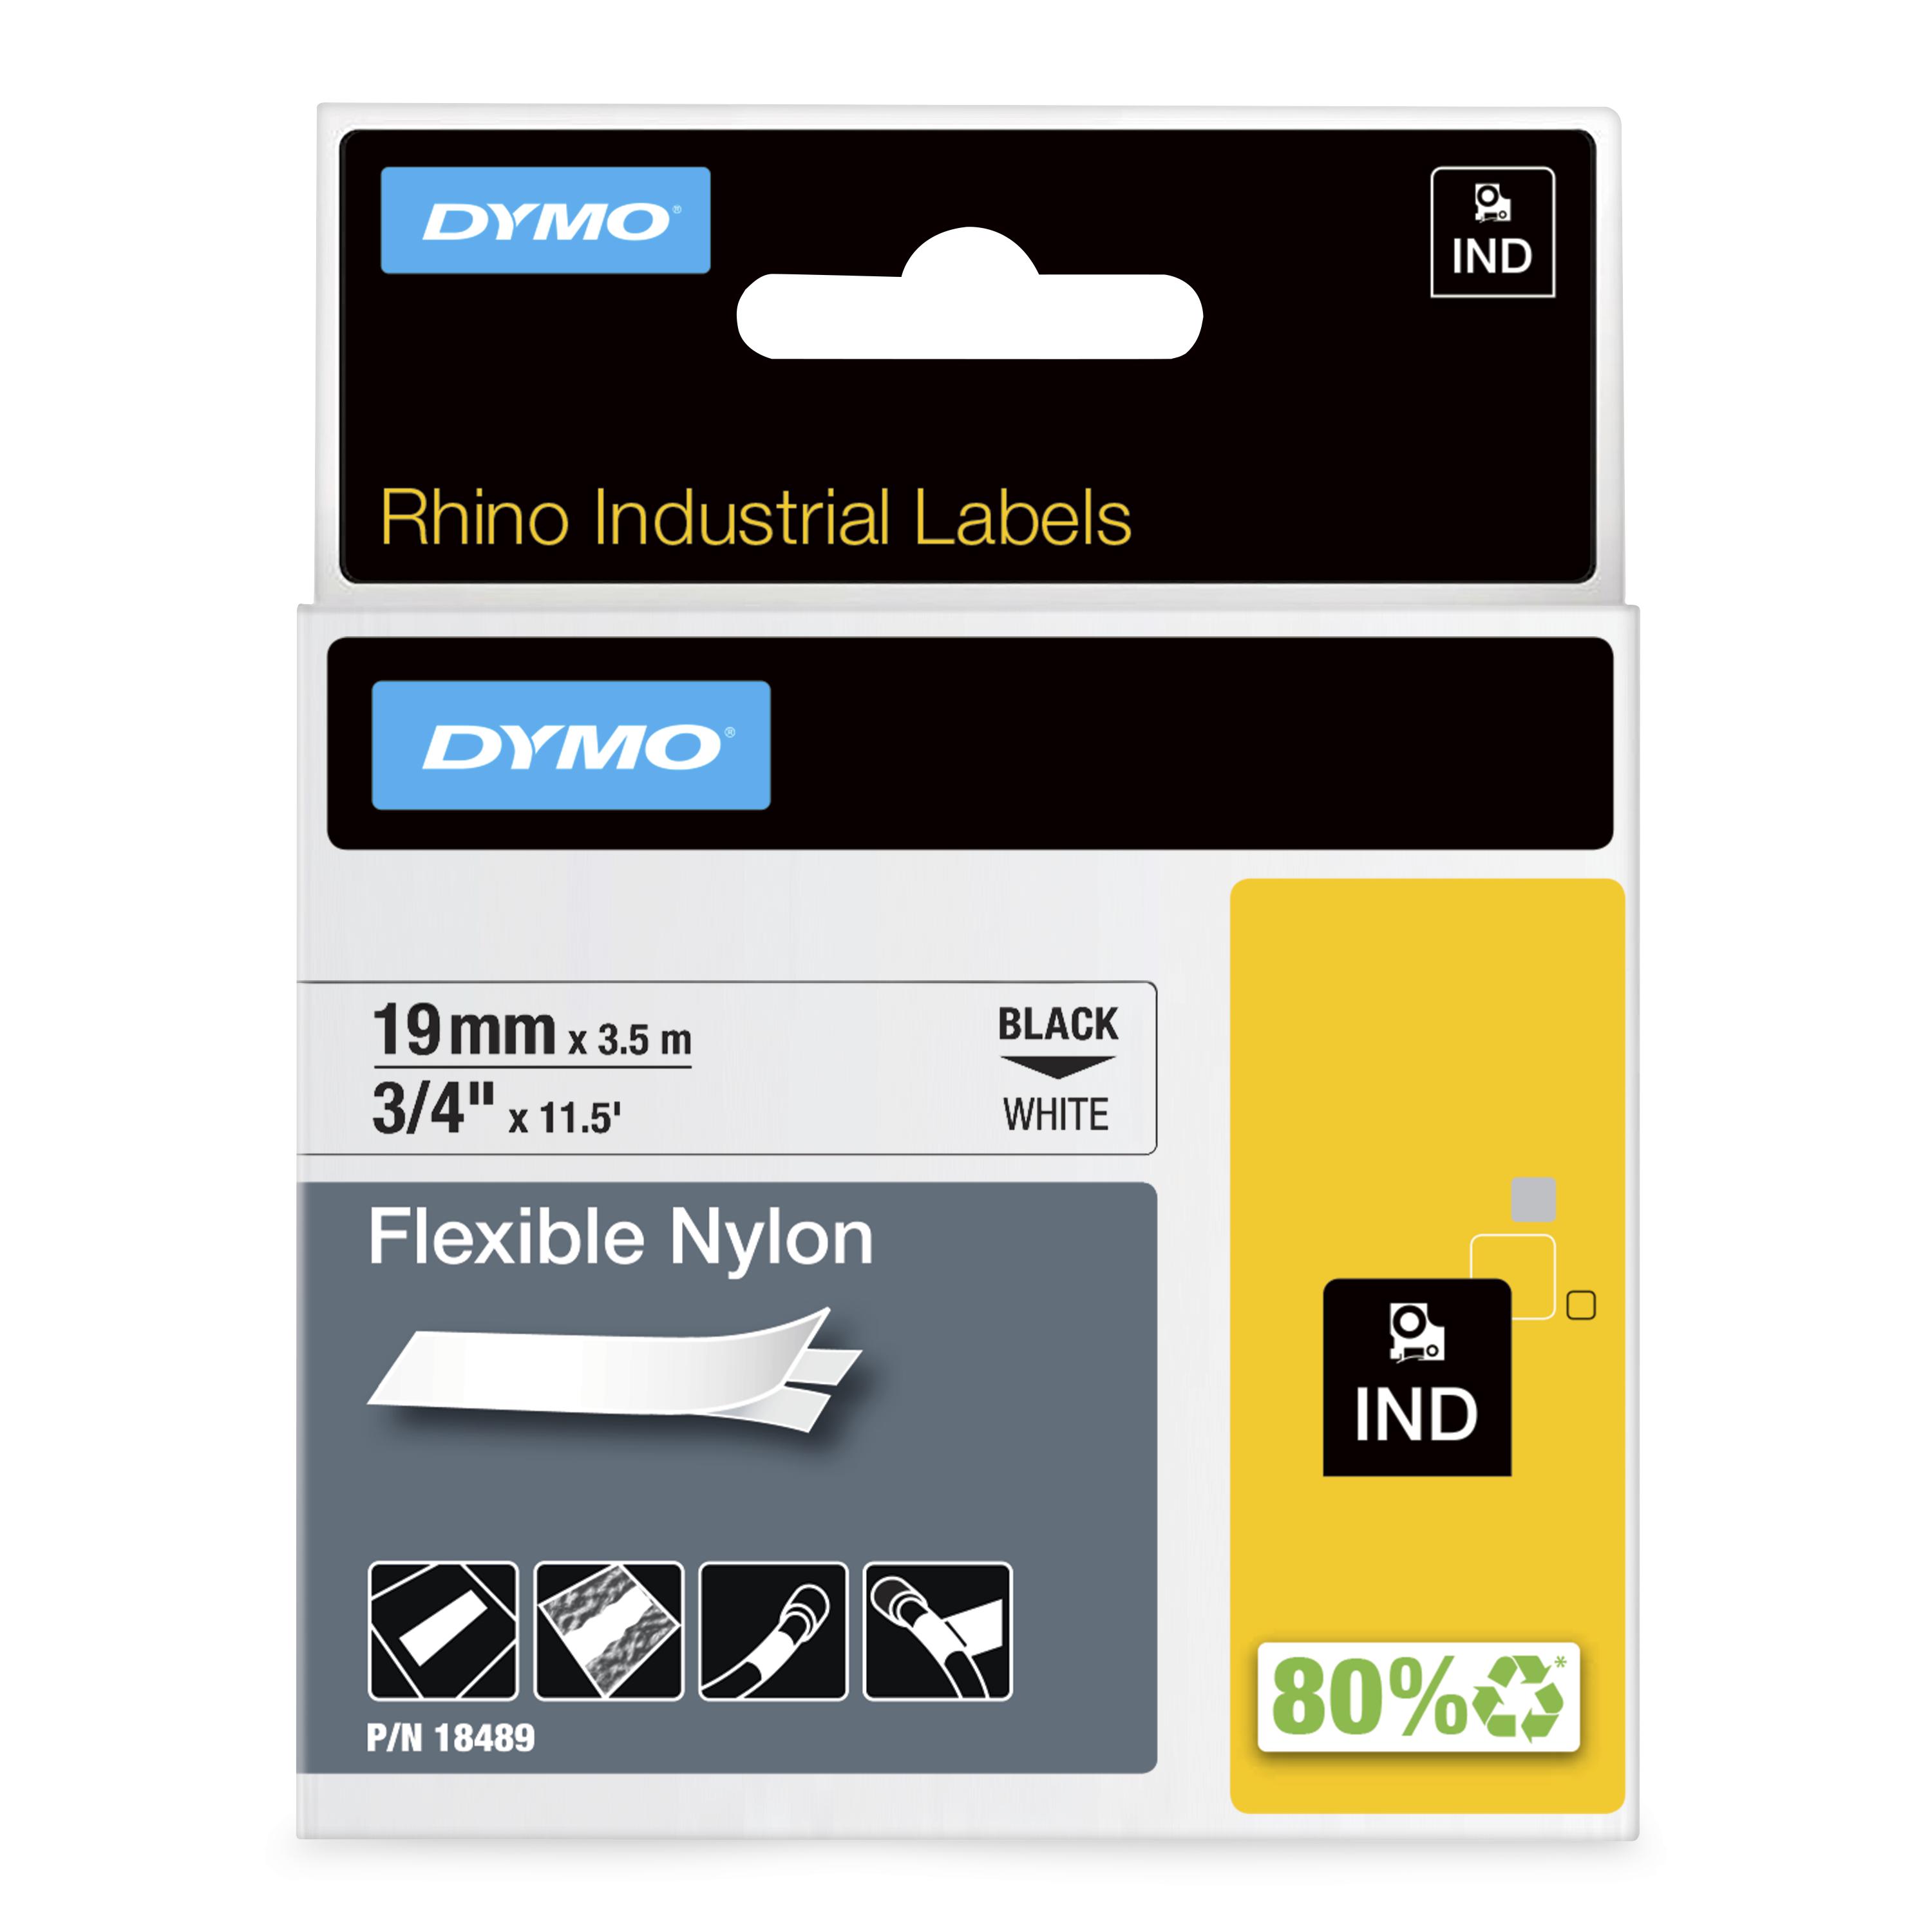 DYMO | Original IND-Schriftband für Rhino | flexibles & reissfestes Nylon | schwarz auf weiß | 19mm x 3,5m